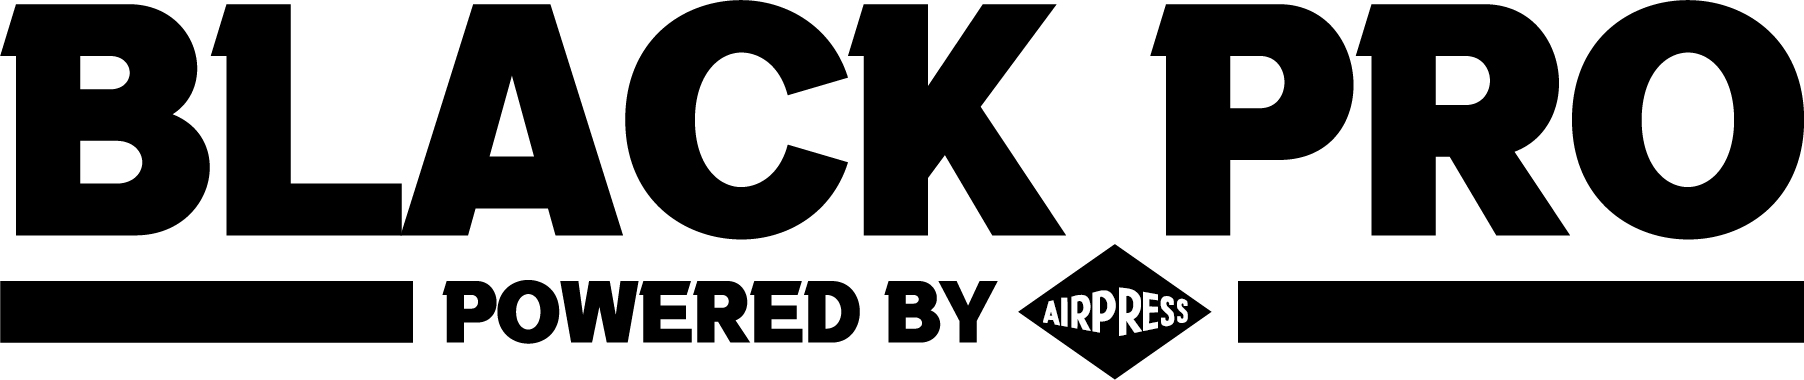 Compresseur d'air professionnel Black Pro (logo noir) | Airpress